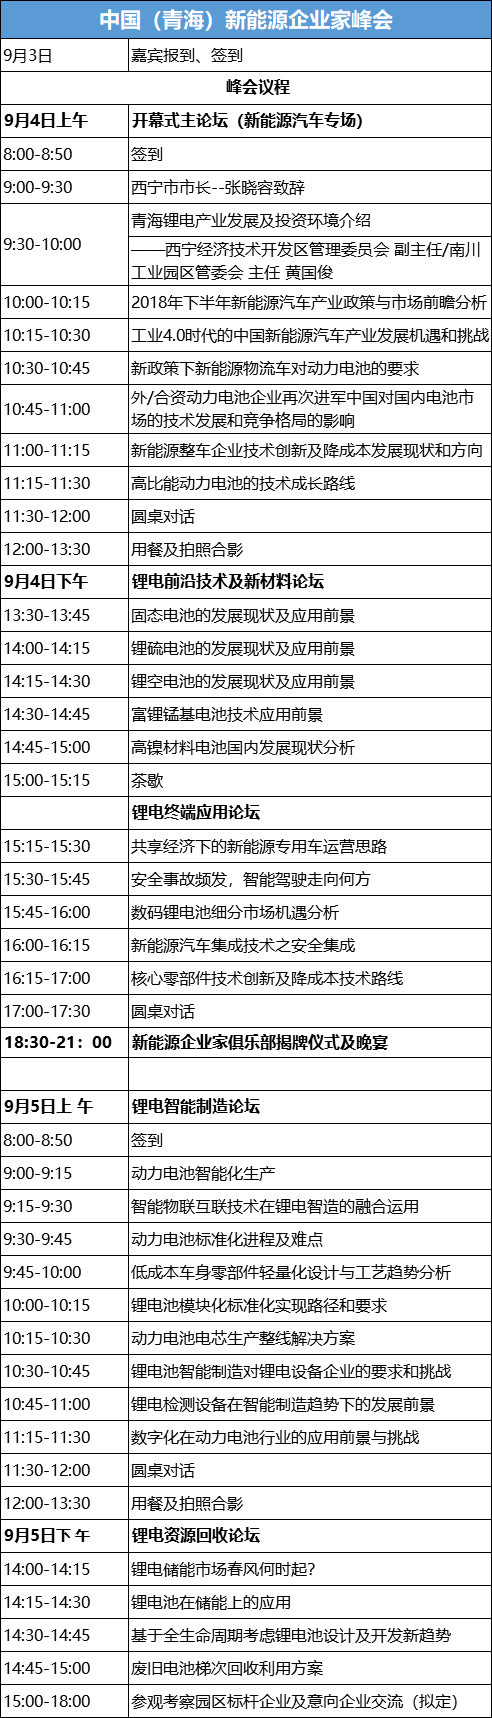 2018(青海)新能源企业家峰会